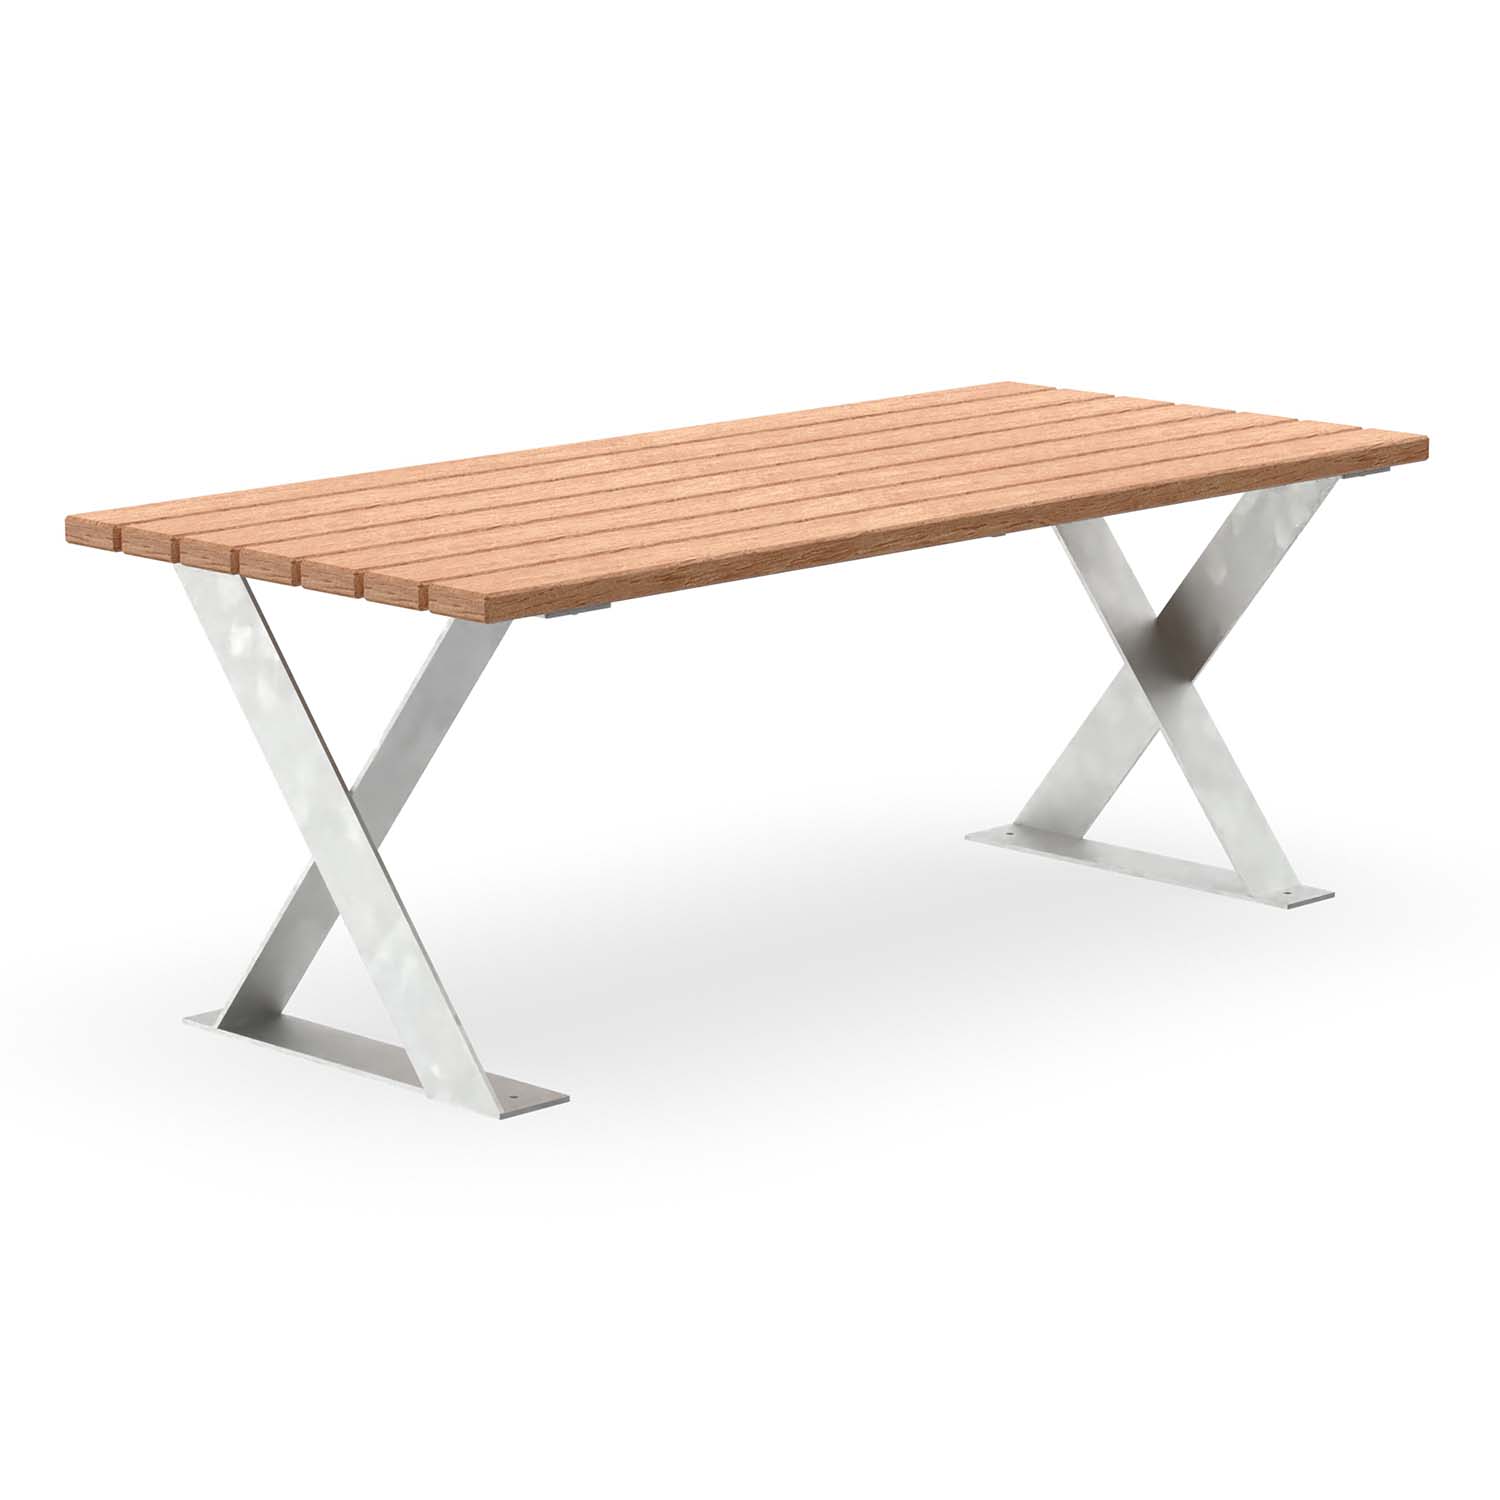 Tisch für Parkbank FLEXI, Gestell aus Flachstahl, Tischfläche aus Holz, verzinkt